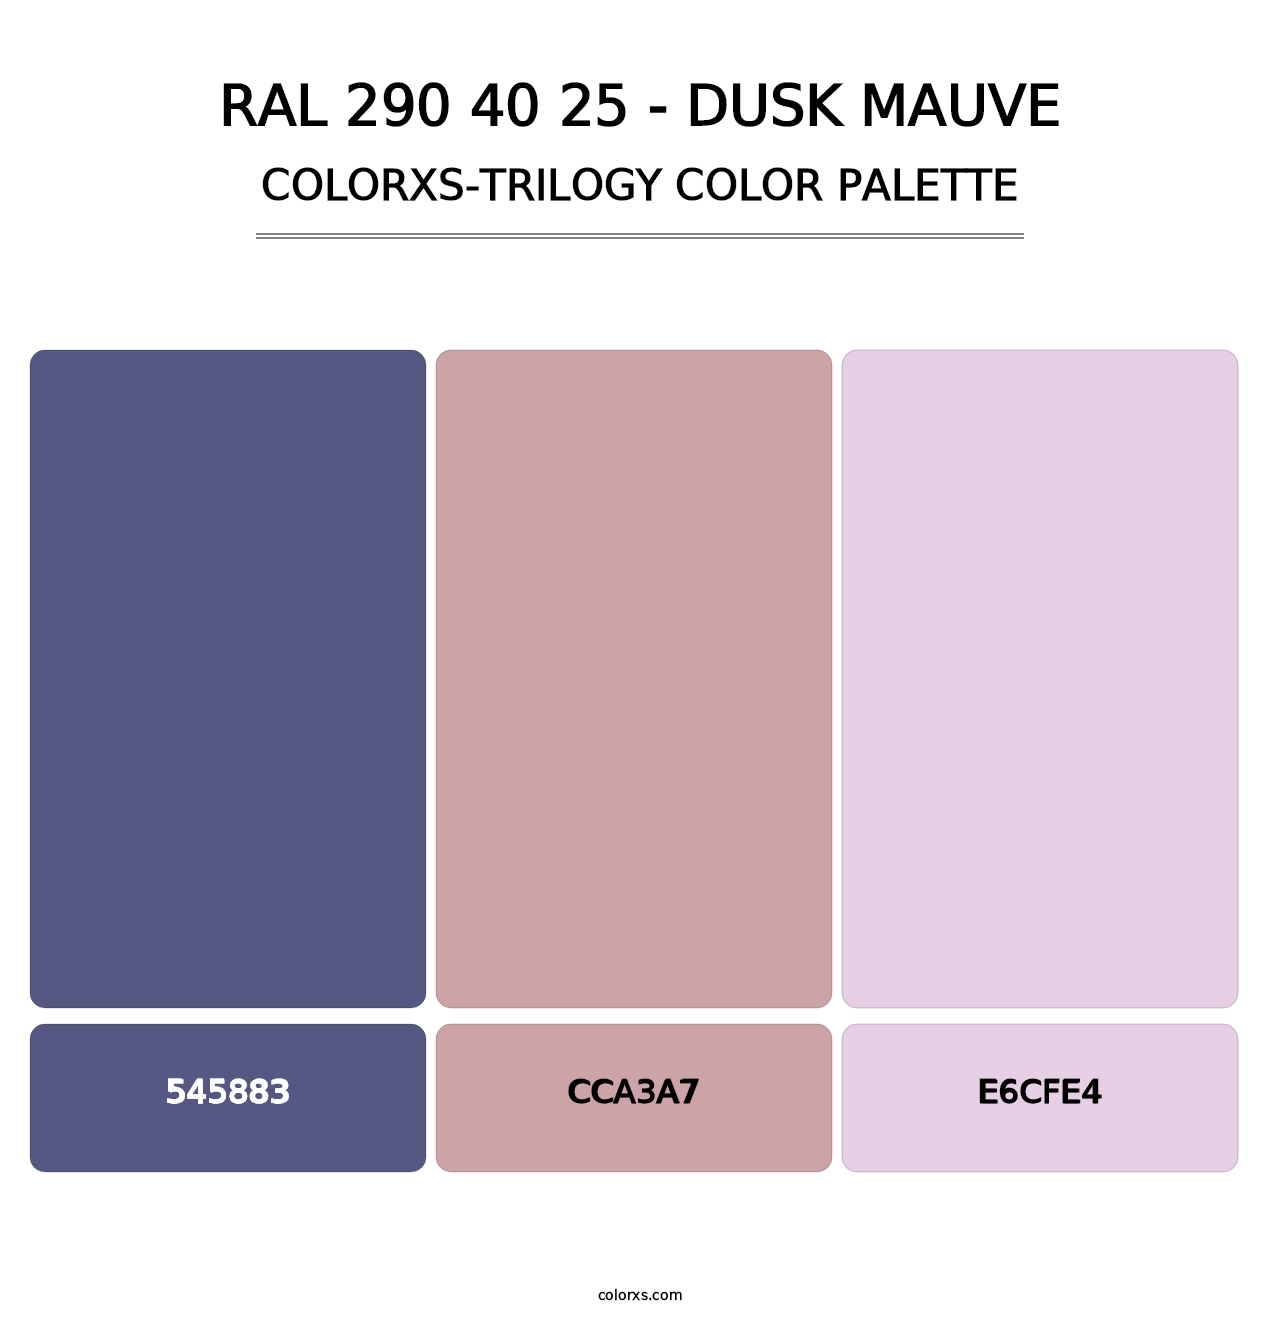 RAL 290 40 25 - Dusk Mauve - Colorxs Trilogy Palette